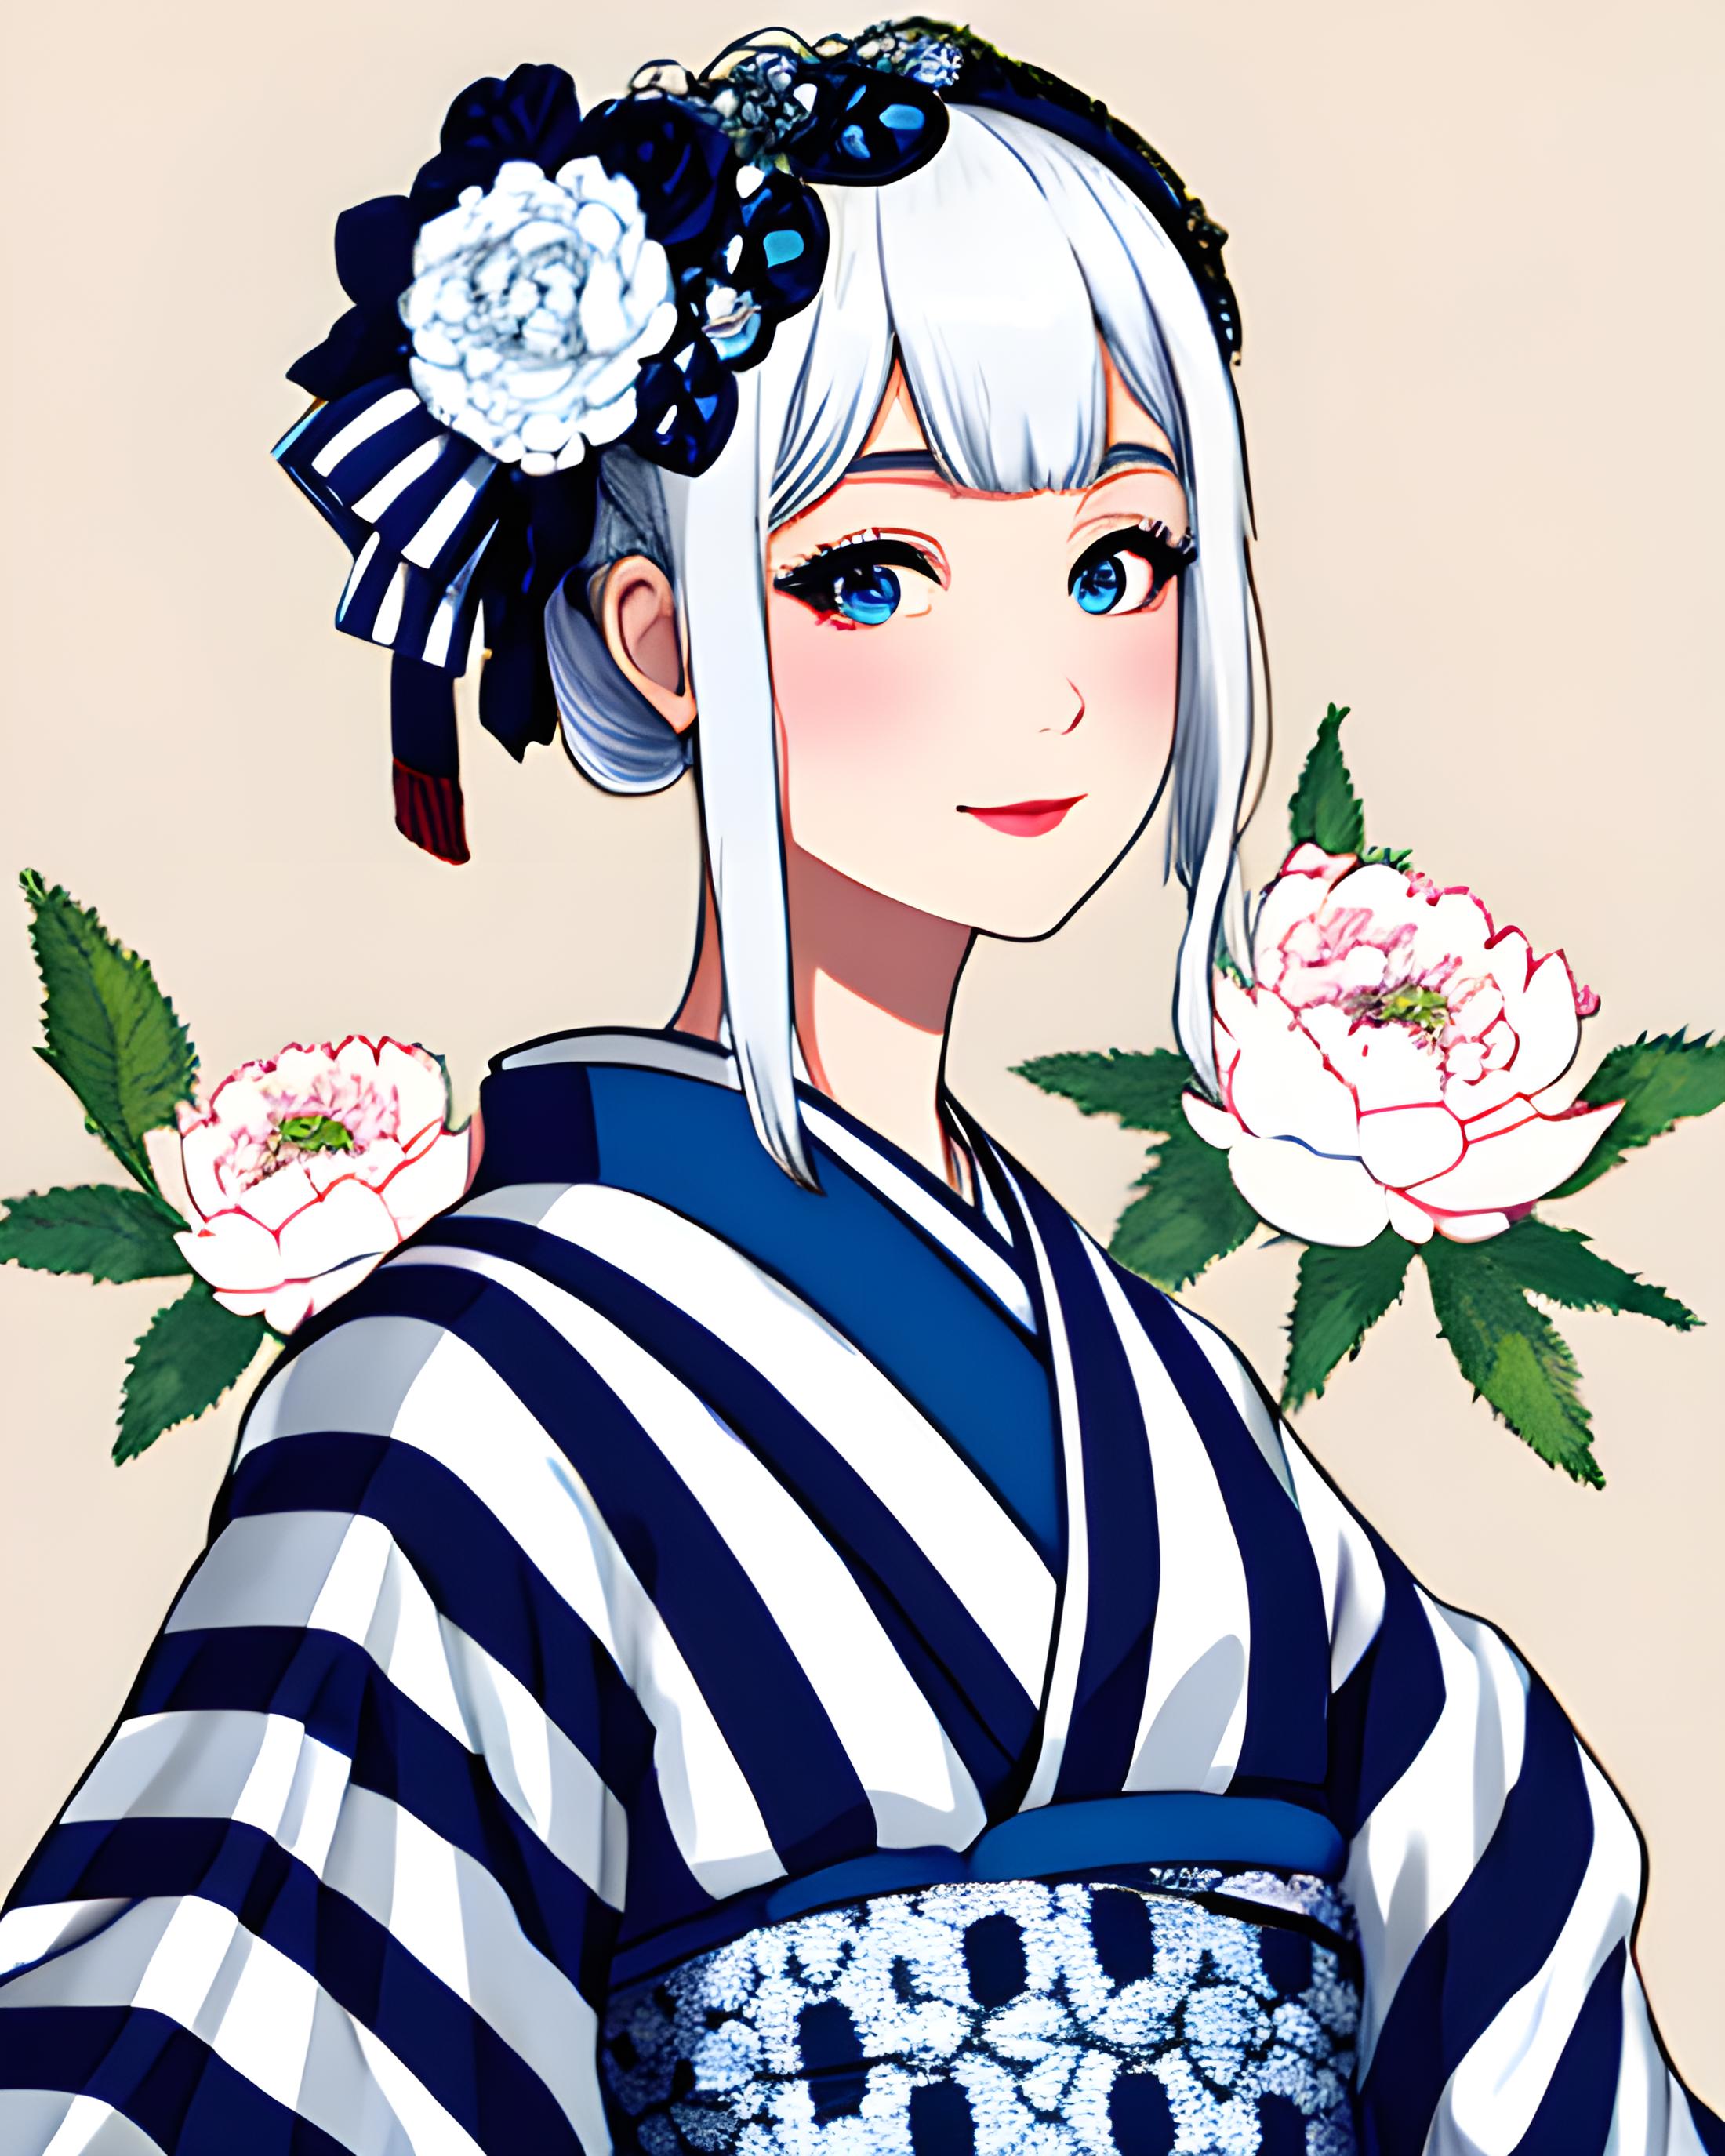 Striped Kimono image by KimiKoro